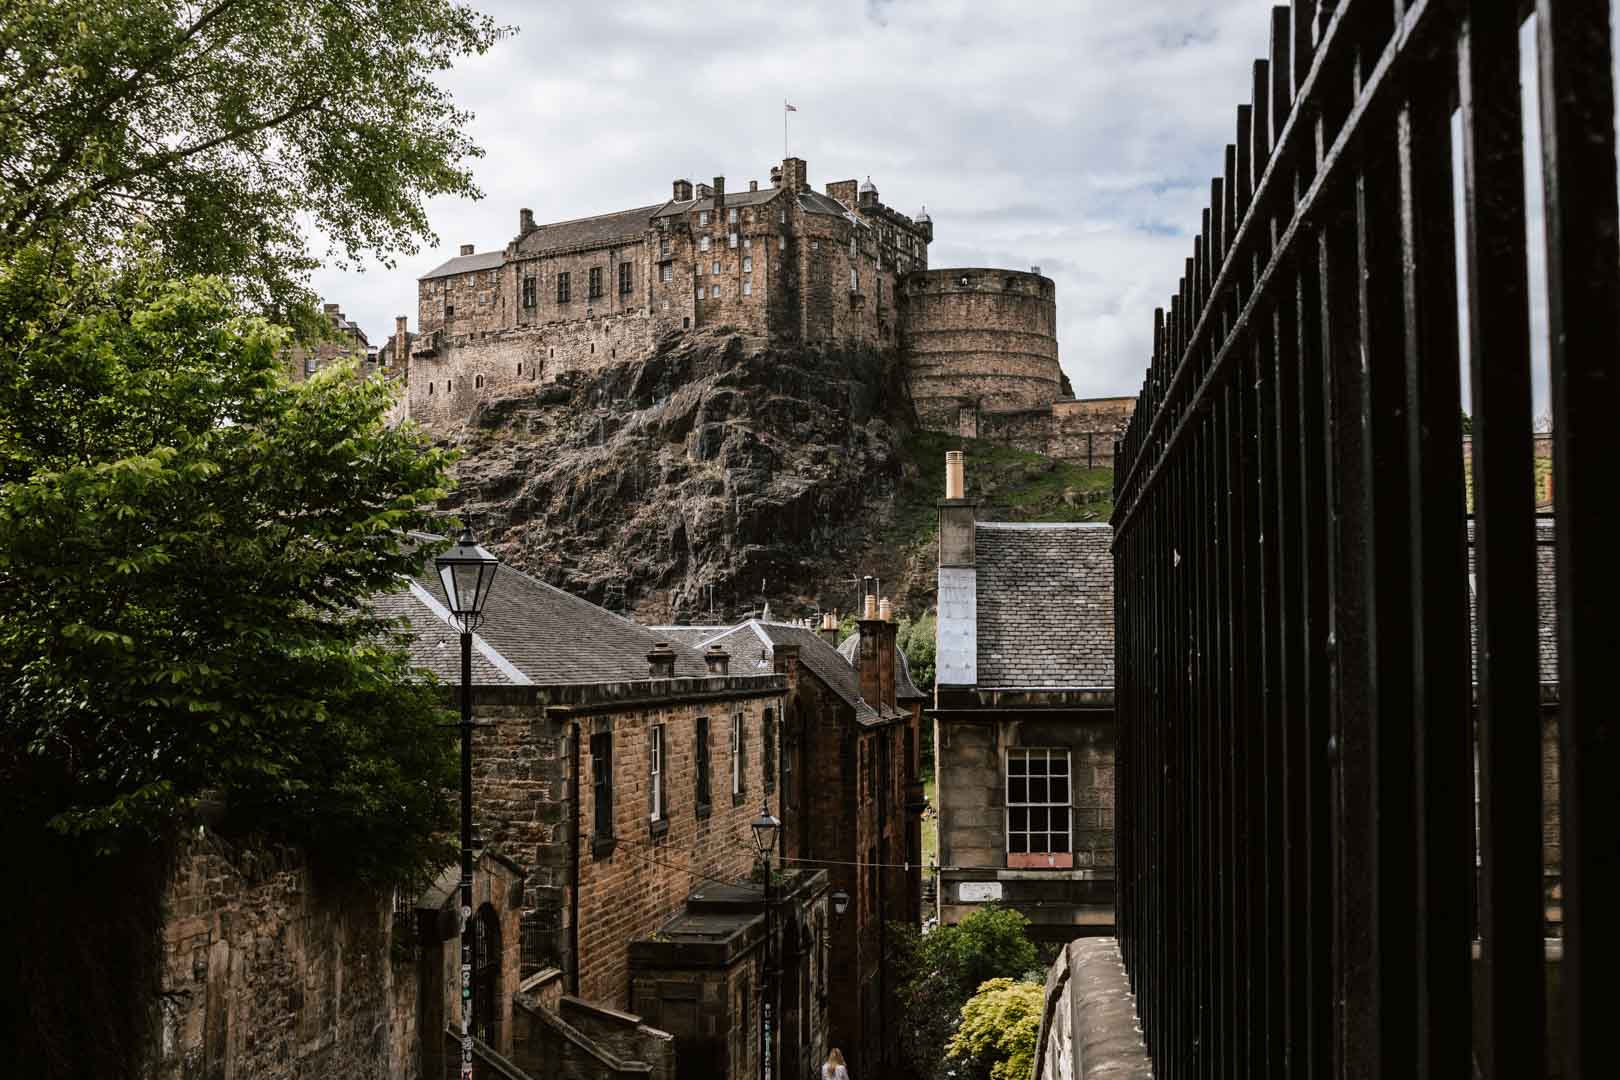 Finding The Best Views of Edinburgh Castle: 8 Epic Spots